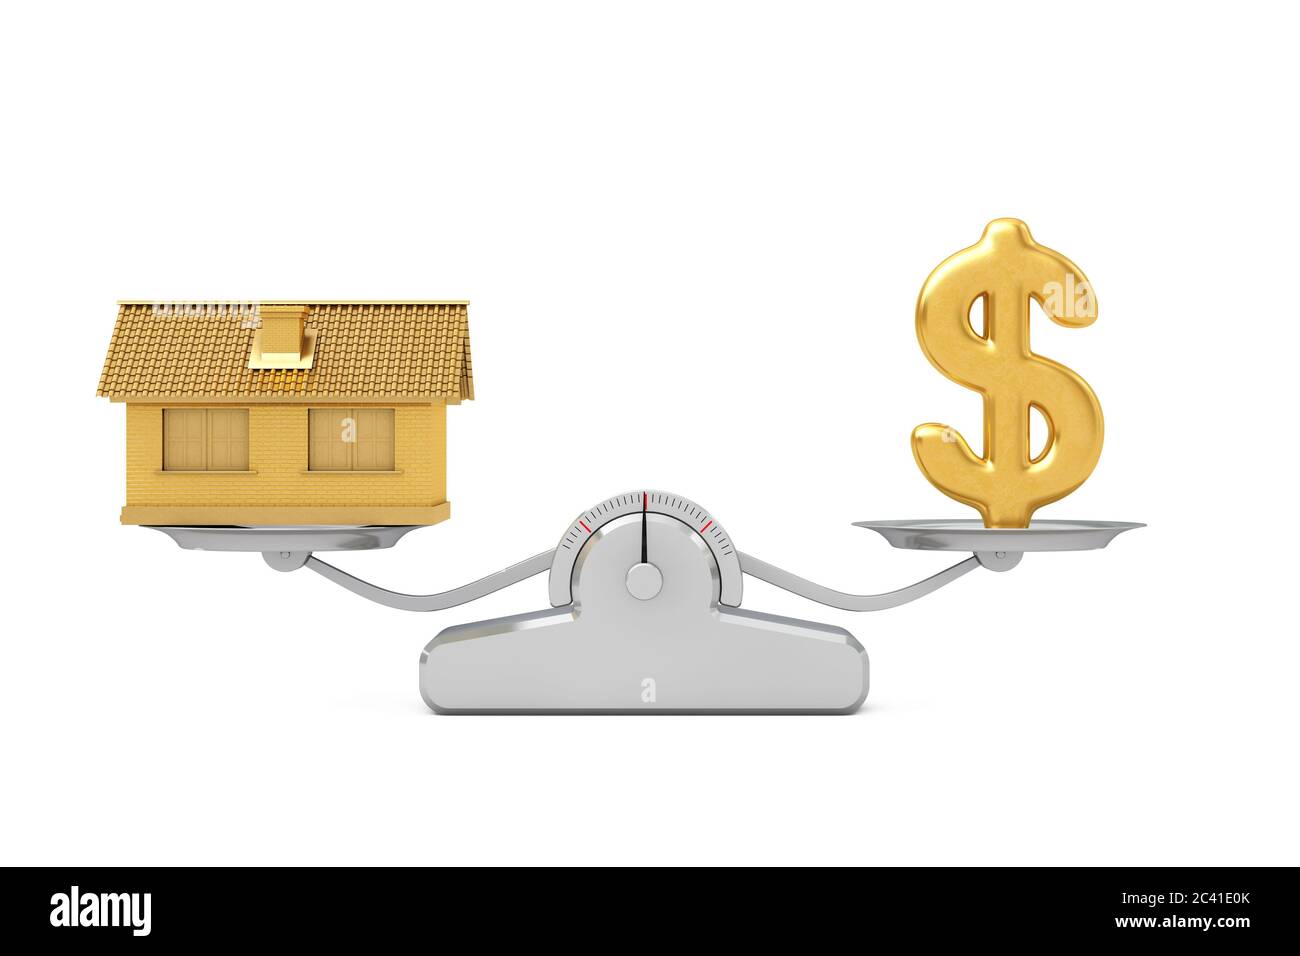 Goldenes Dollar-Zeichen mit Golden House Balancing auf einer einfachen Gewichtungsskala auf weißem Hintergrund. 3d-Rendering Stockfoto